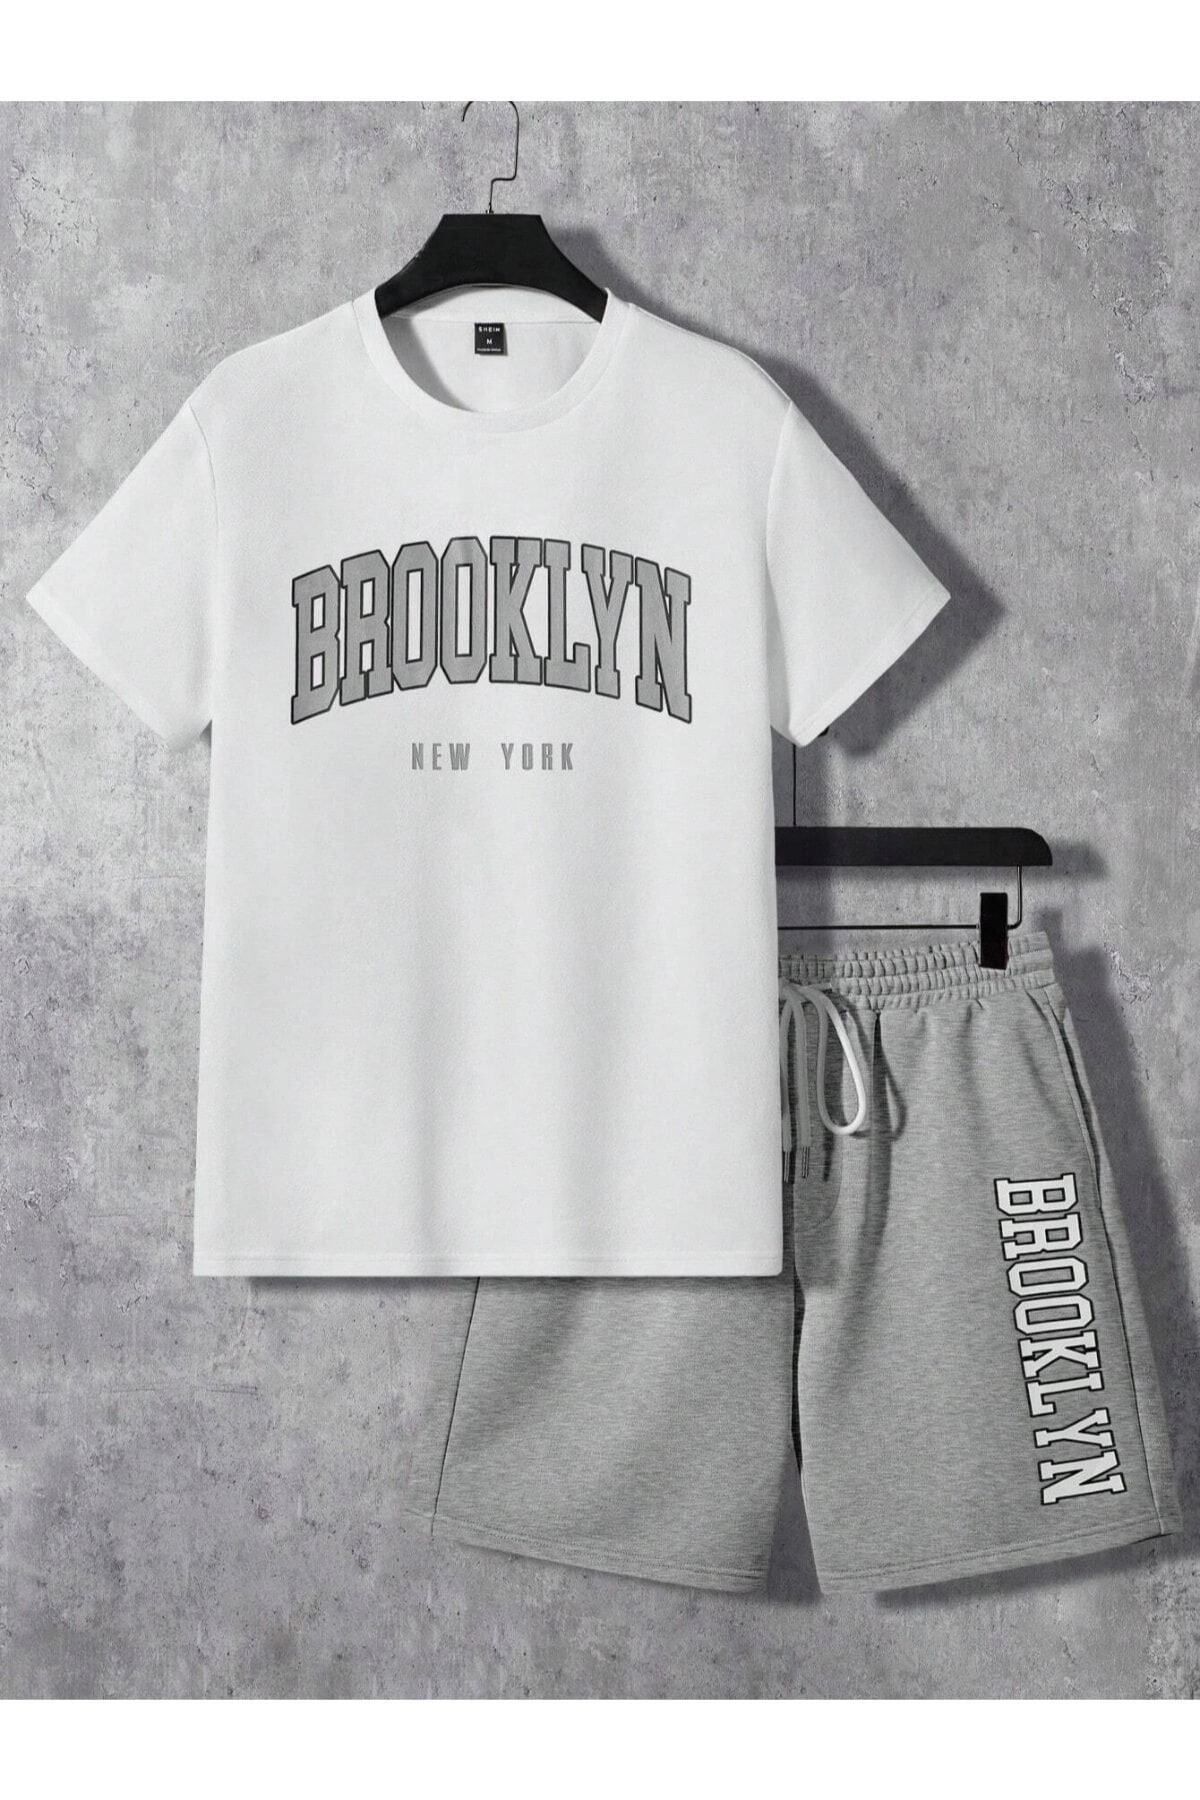 Hunors Sportswear & Company Brooklyn New York Beyaz T-Shirt Gri Şort - Şortlu Tişört Alt Üst Takım Baskılı Bisiklet Yaka